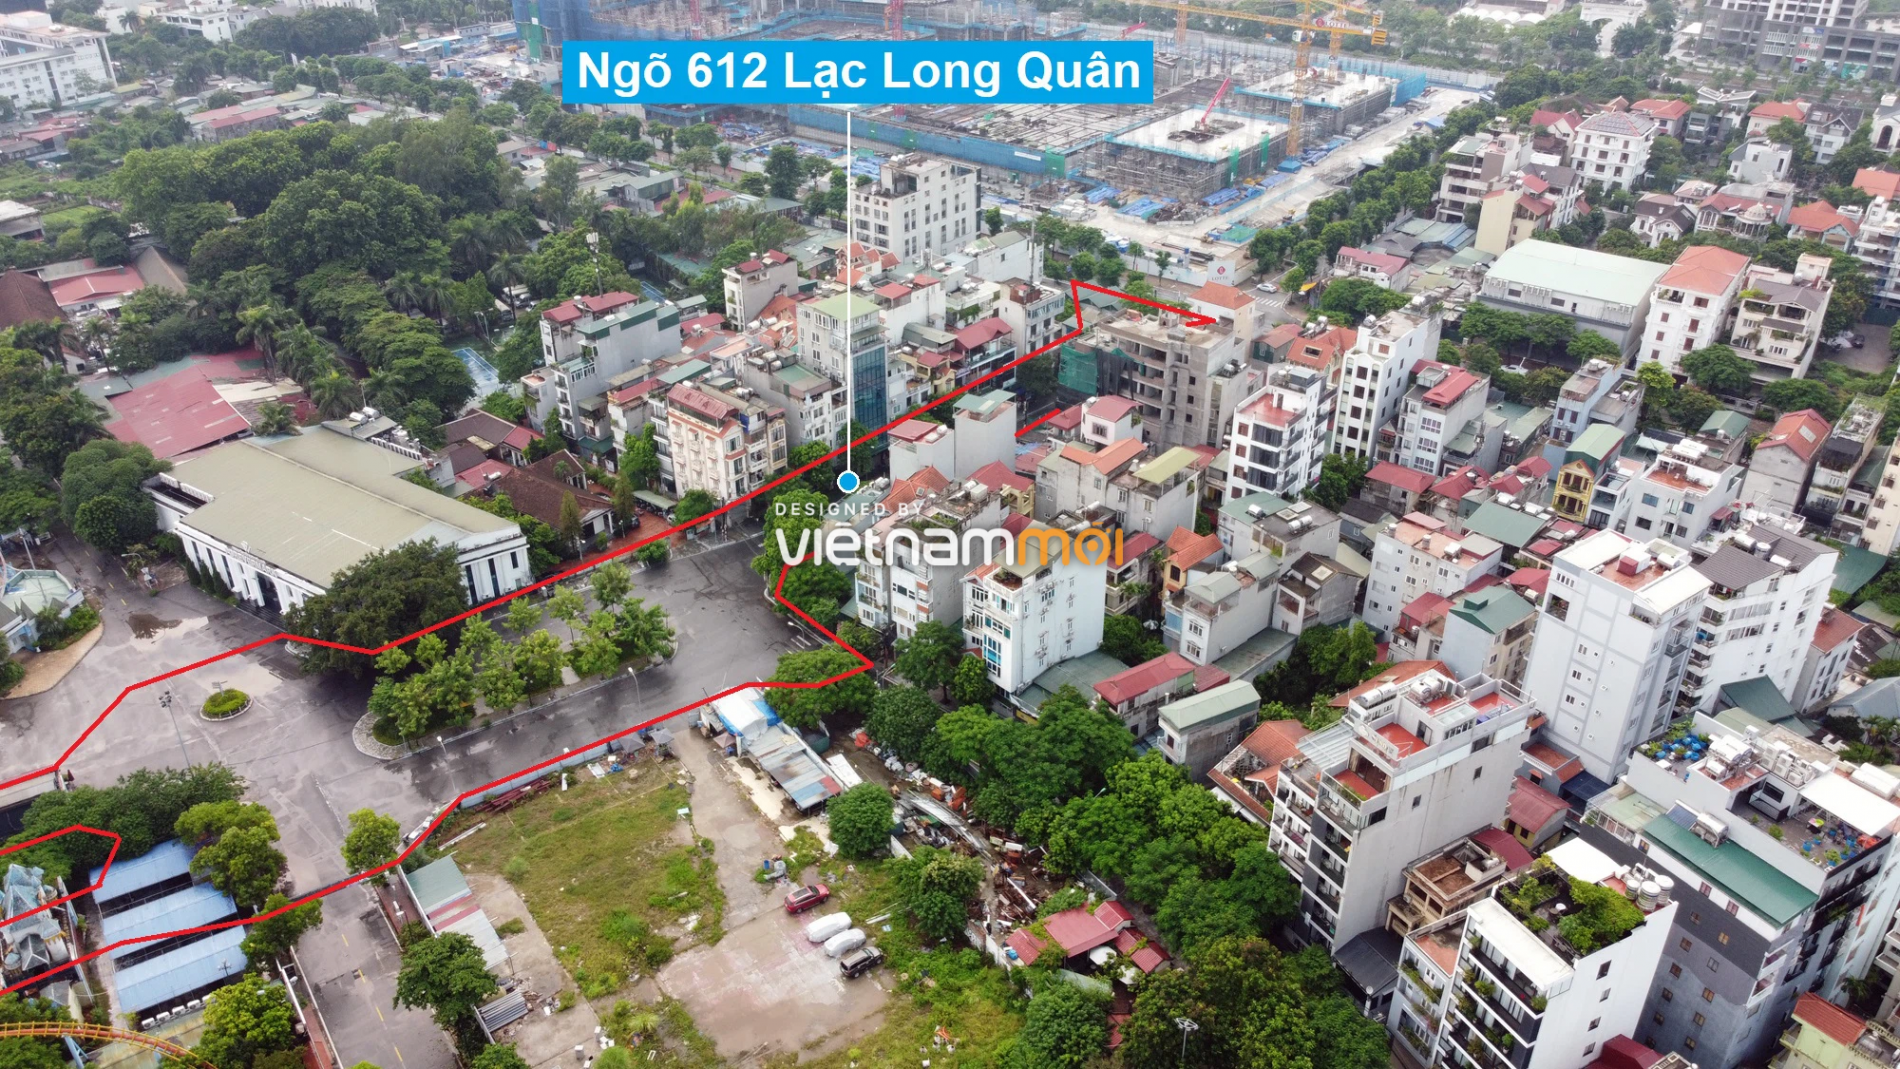 Những khu đất sắp thu hồi để mở đường ở quận Tây Hồ, Hà Nội (phần 2) - Ảnh 9.